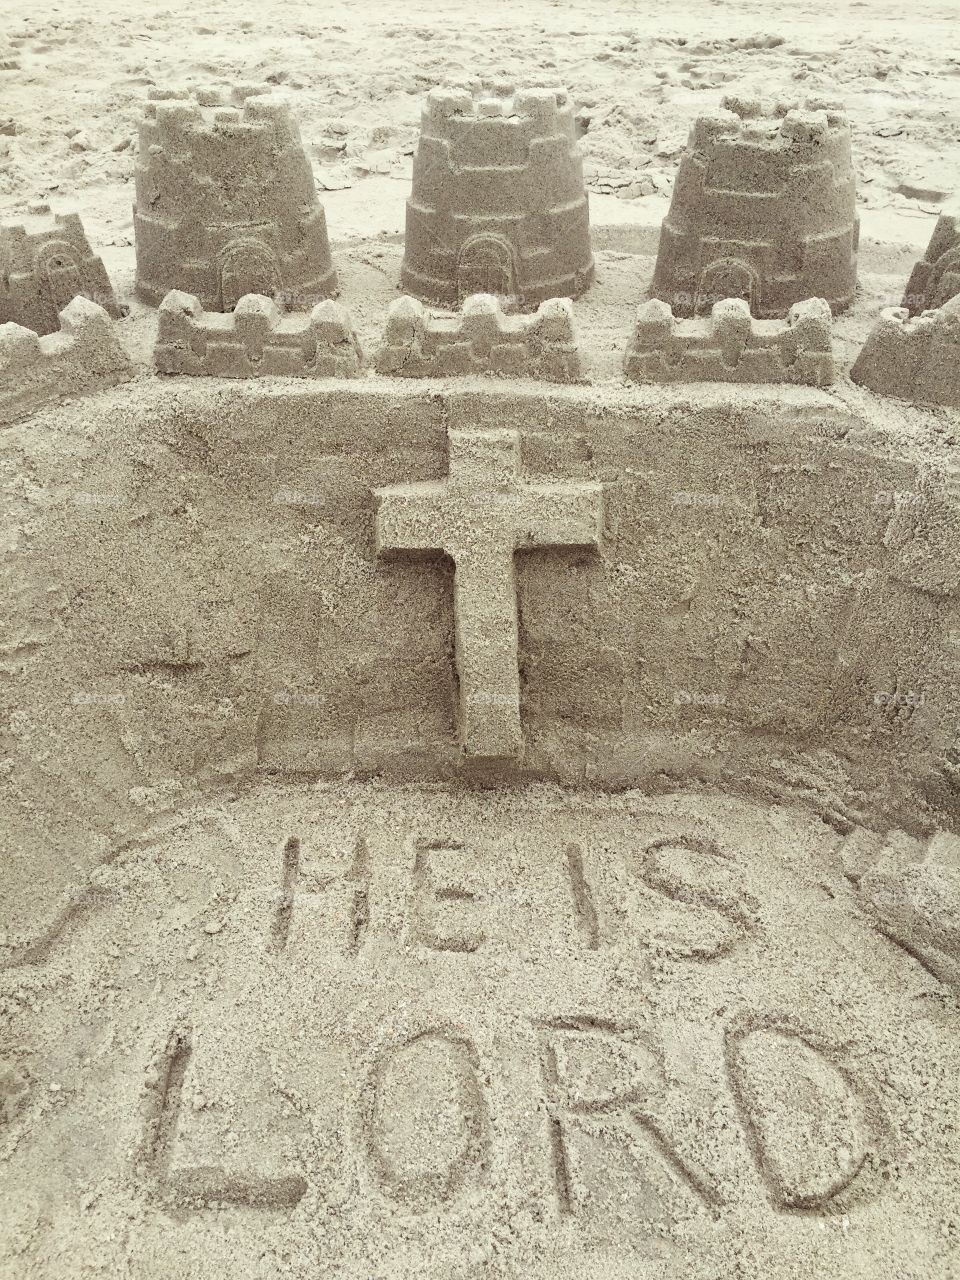 Sand Castle. A sand castle on the beach with a cross.